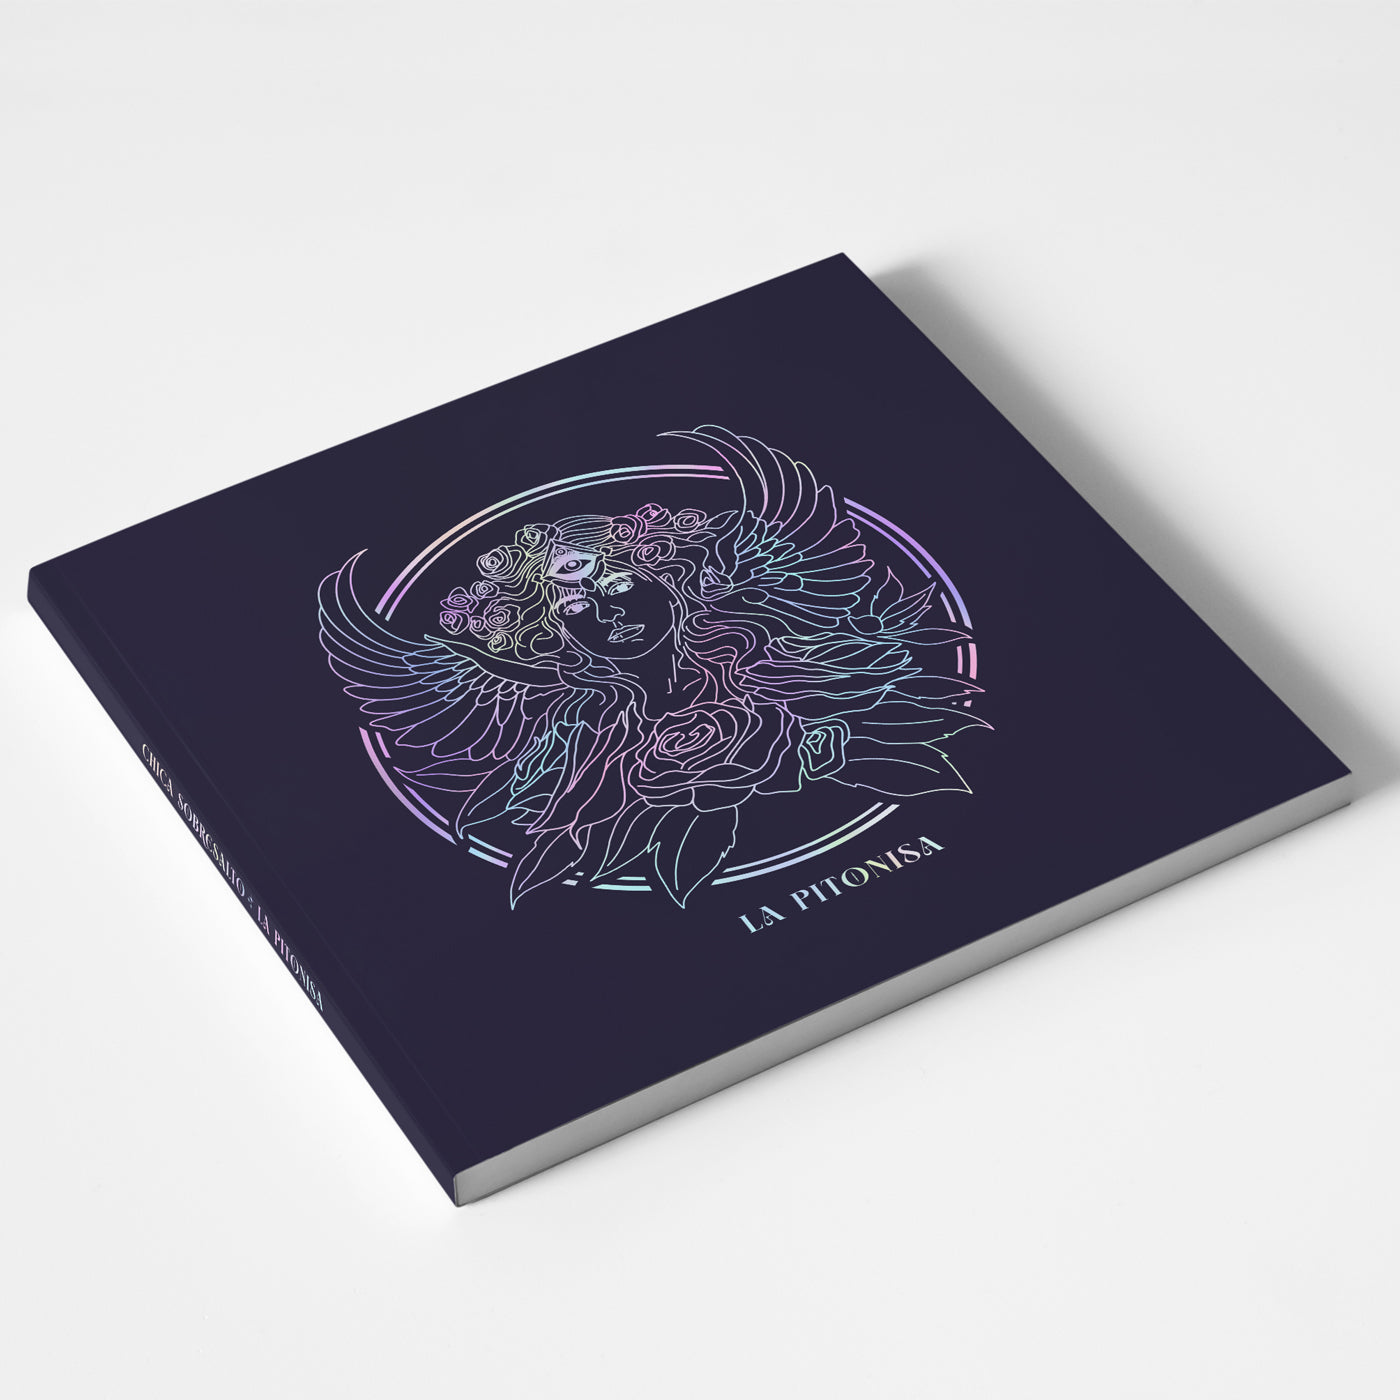 CD - Oráculo (Edición limitada)